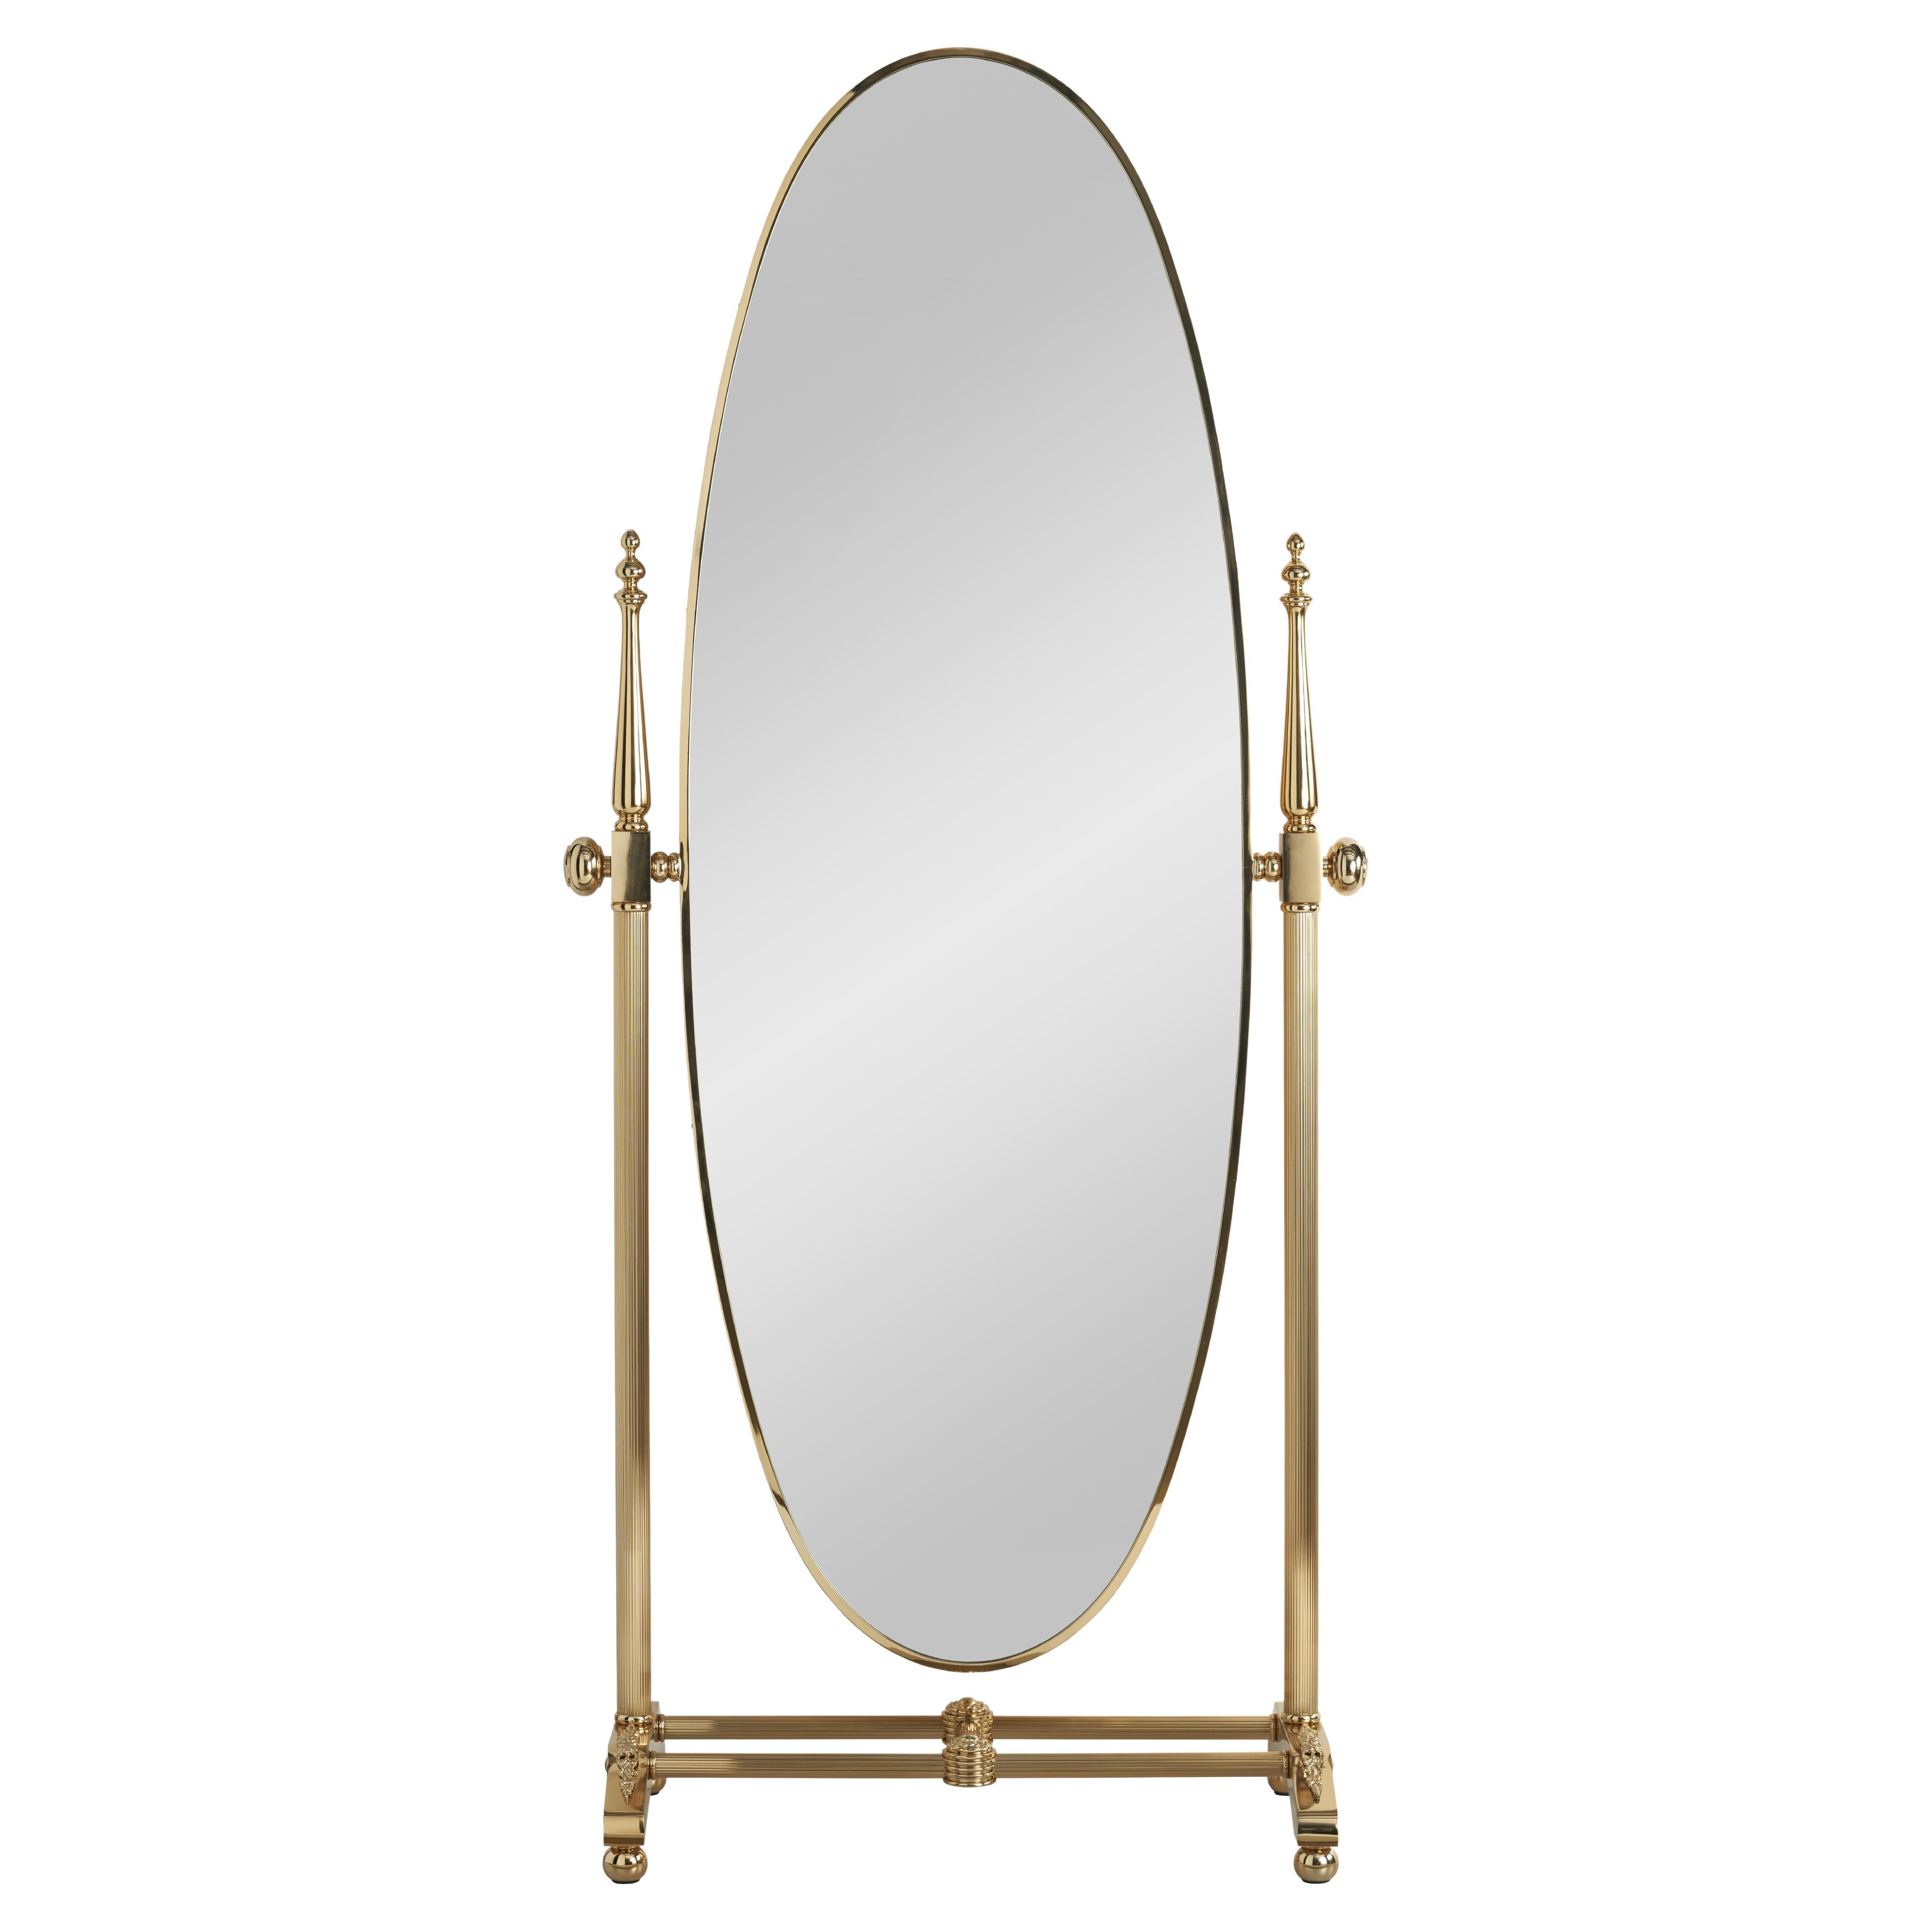 EL065 floor standing tilting mirror For Sale